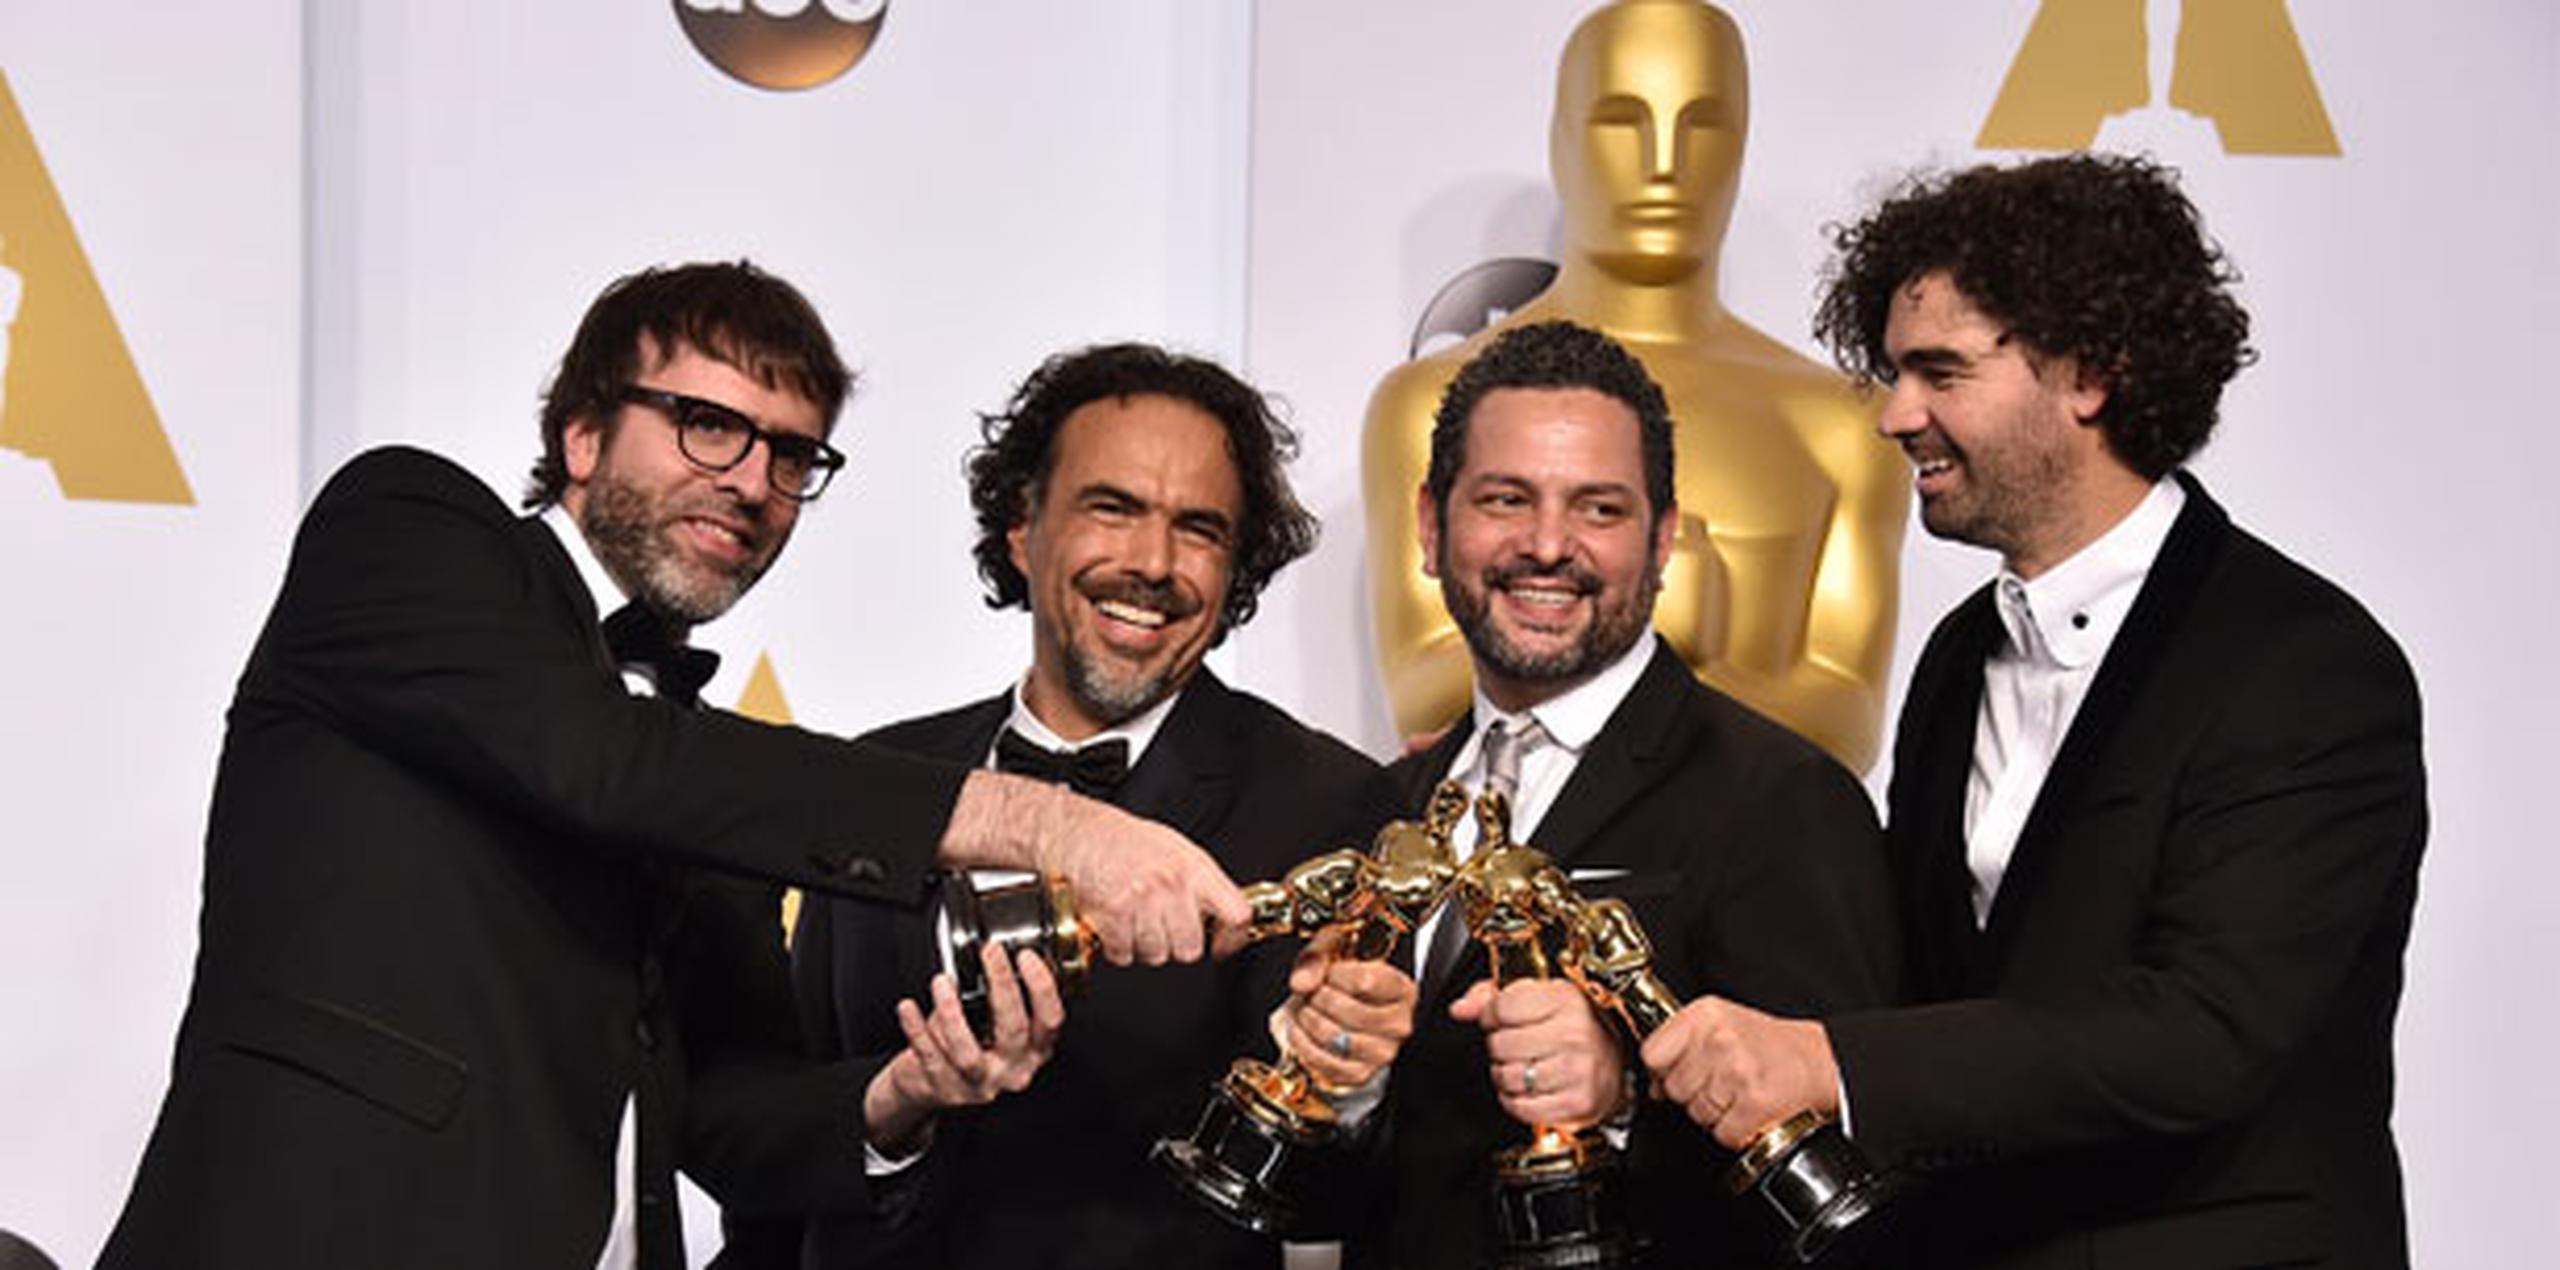 Alejandro González Iñárritu, director del filme, recibió el Oscar a la mejor dirección y compartió el premio al mejor guión original. La cinta también ganó en la categoría de mejor cinematografía para Emmanuel “Chivo” Lubezki. (Prensa Asociada)